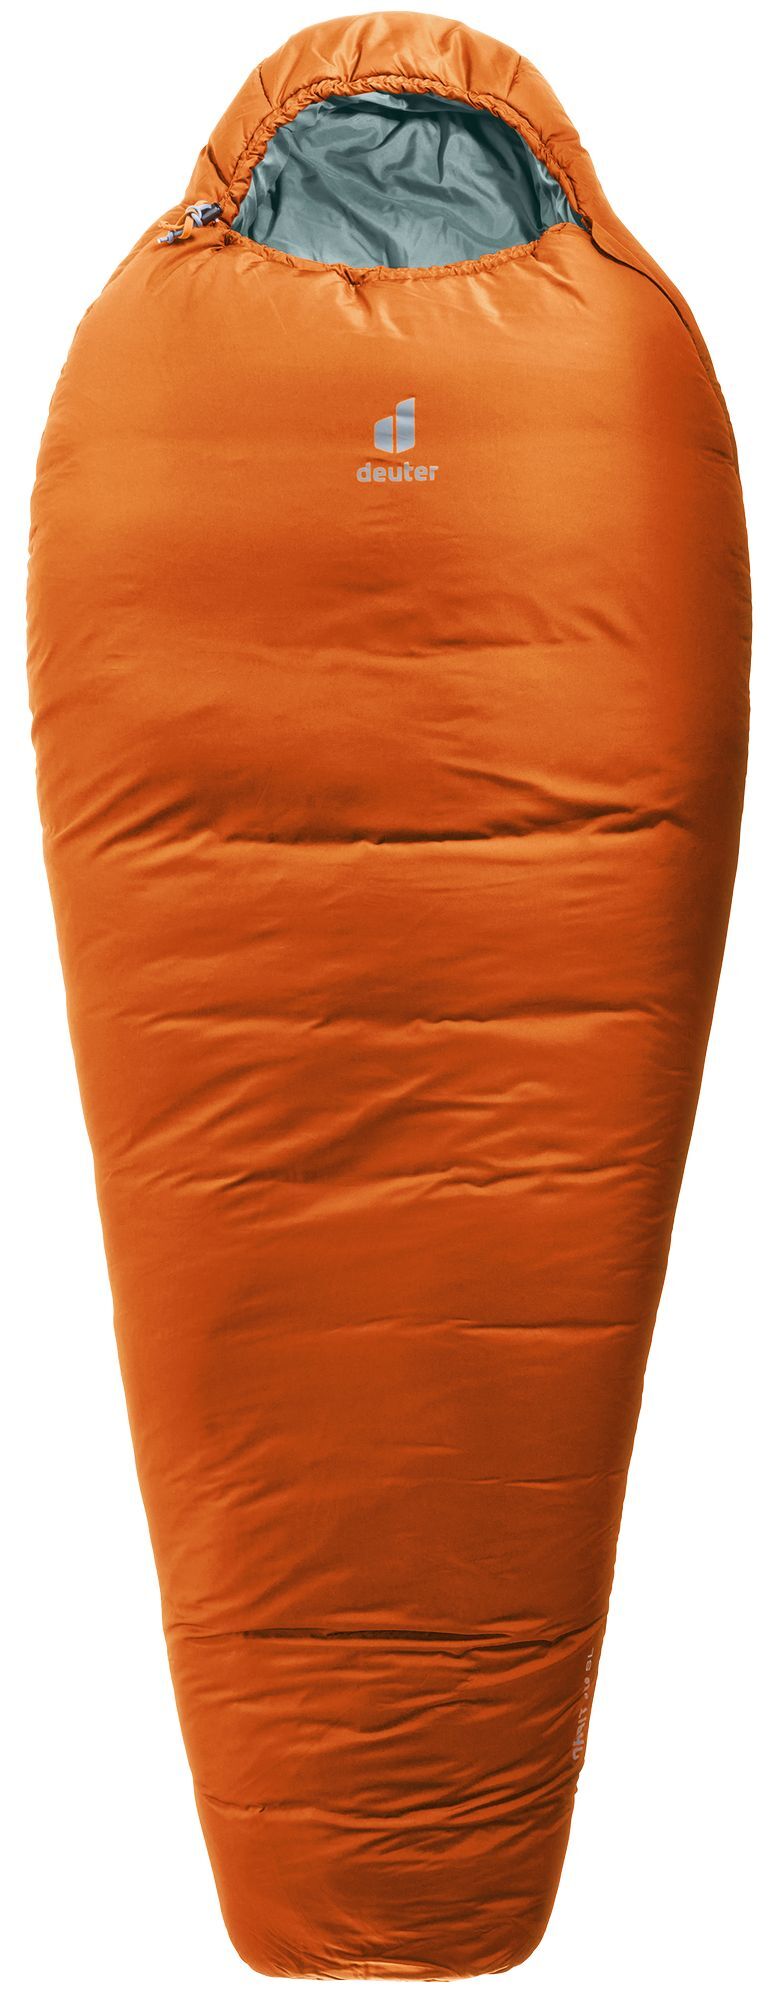 Deuter Orbit -5° SL - Sleeping bag - Women's